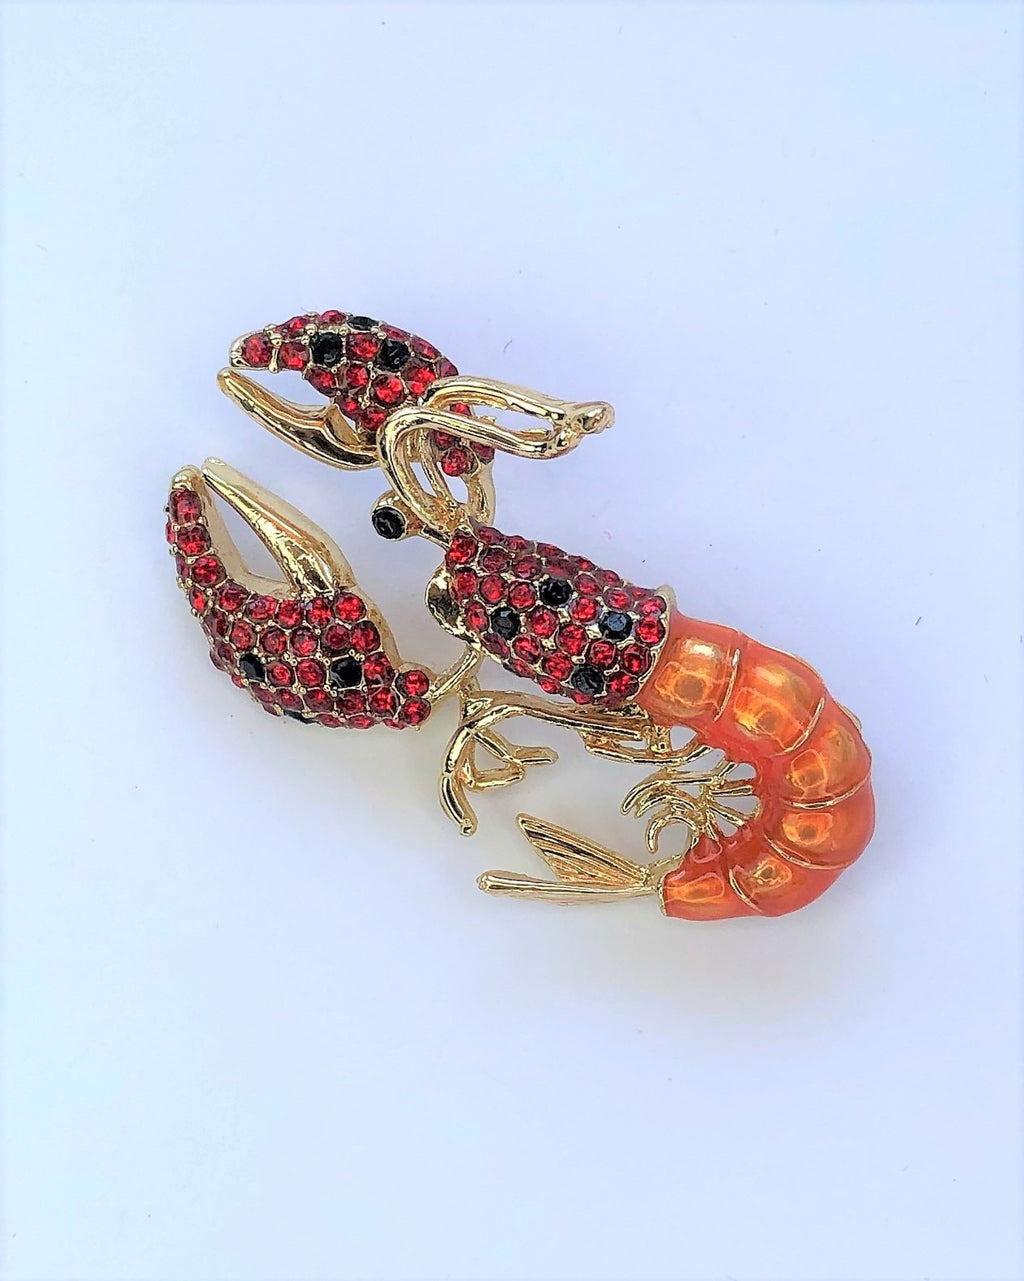 Red & orange lobster brooch at erika